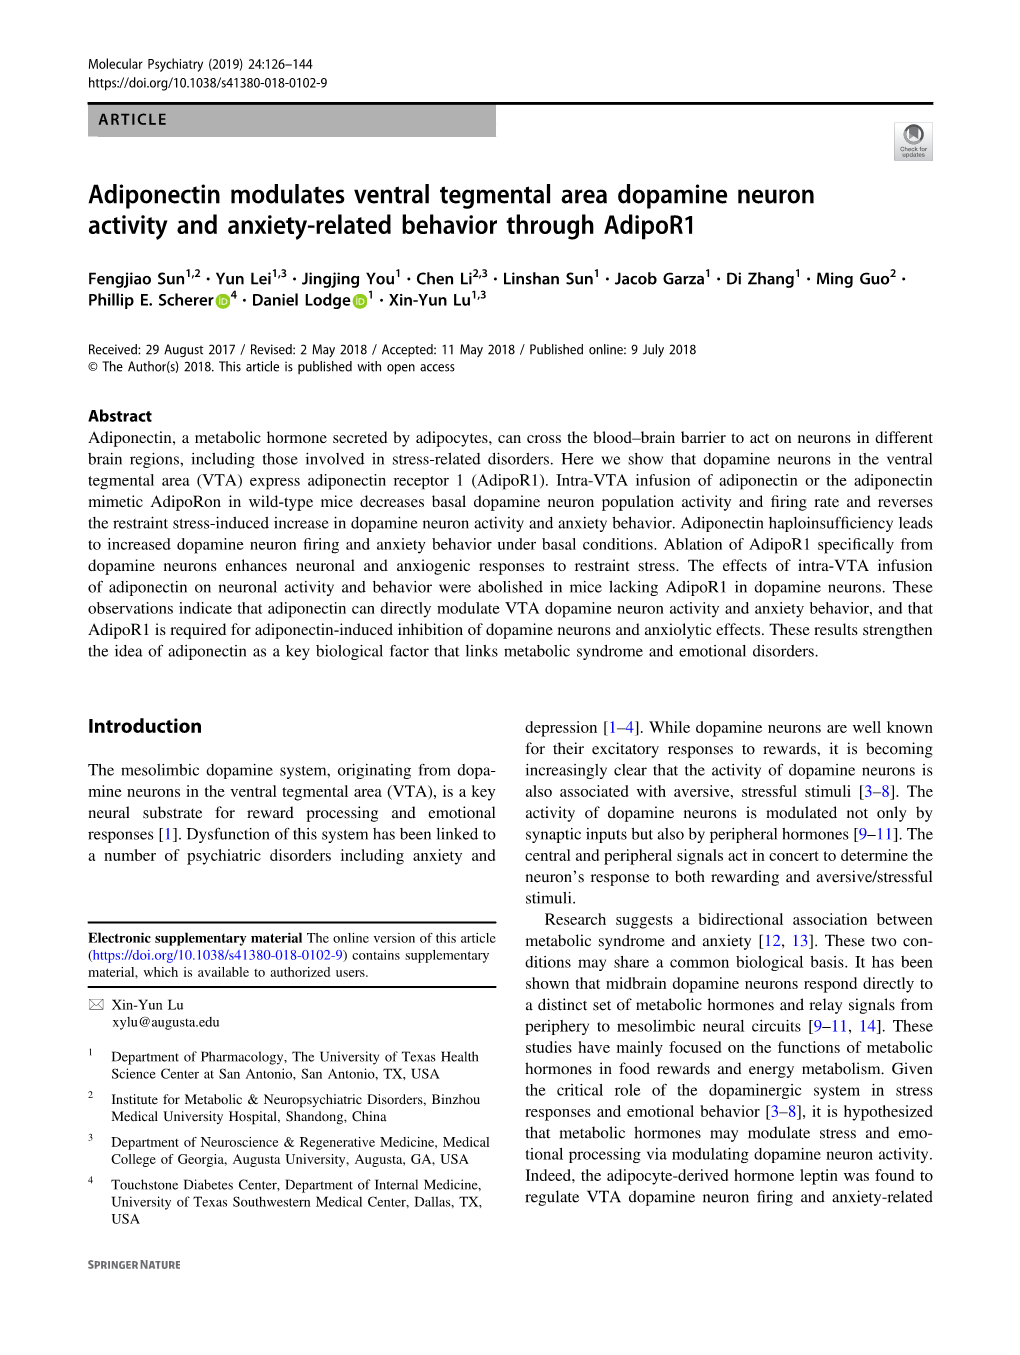 Adiponectin Modulates Ventral Tegmental Area Dopamine Neuron Activity and Anxiety-Related Behavior Through Adipor1